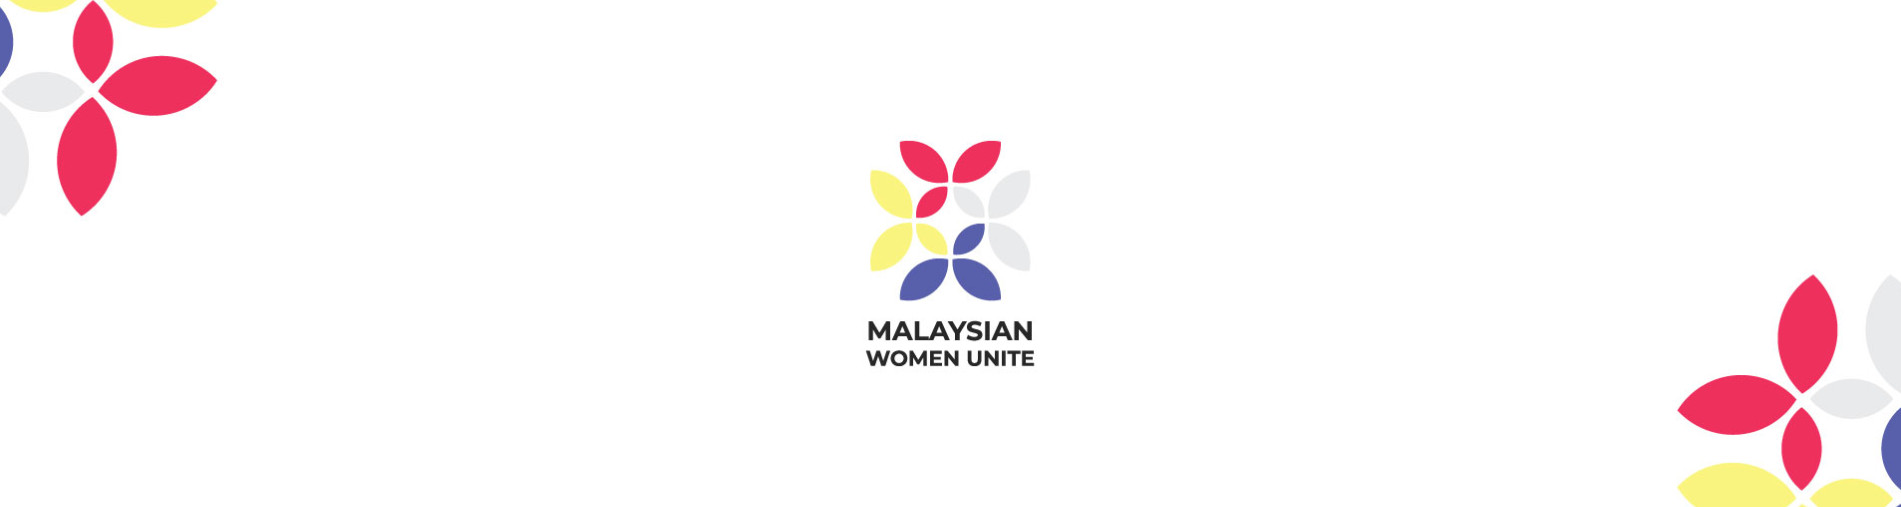 Malaysian Women Unite Campaign 2020